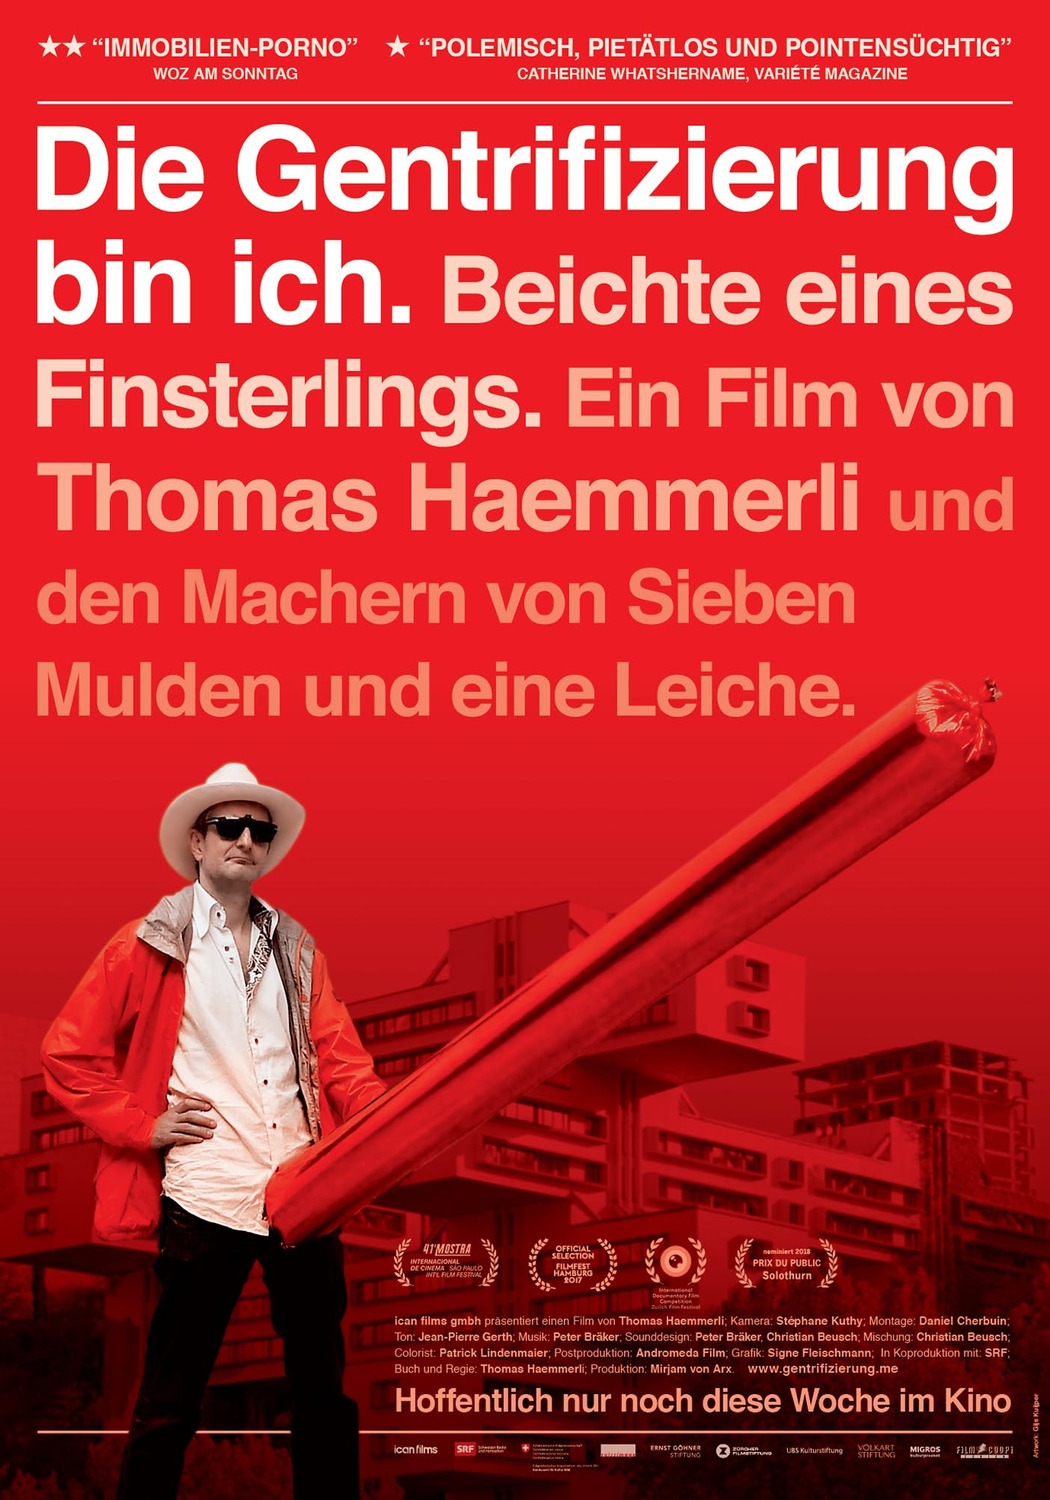 Extra Large Movie Poster Image for Die Gentrifizierung bin ich. Beichte eines Finsterlings (#1 of 2)